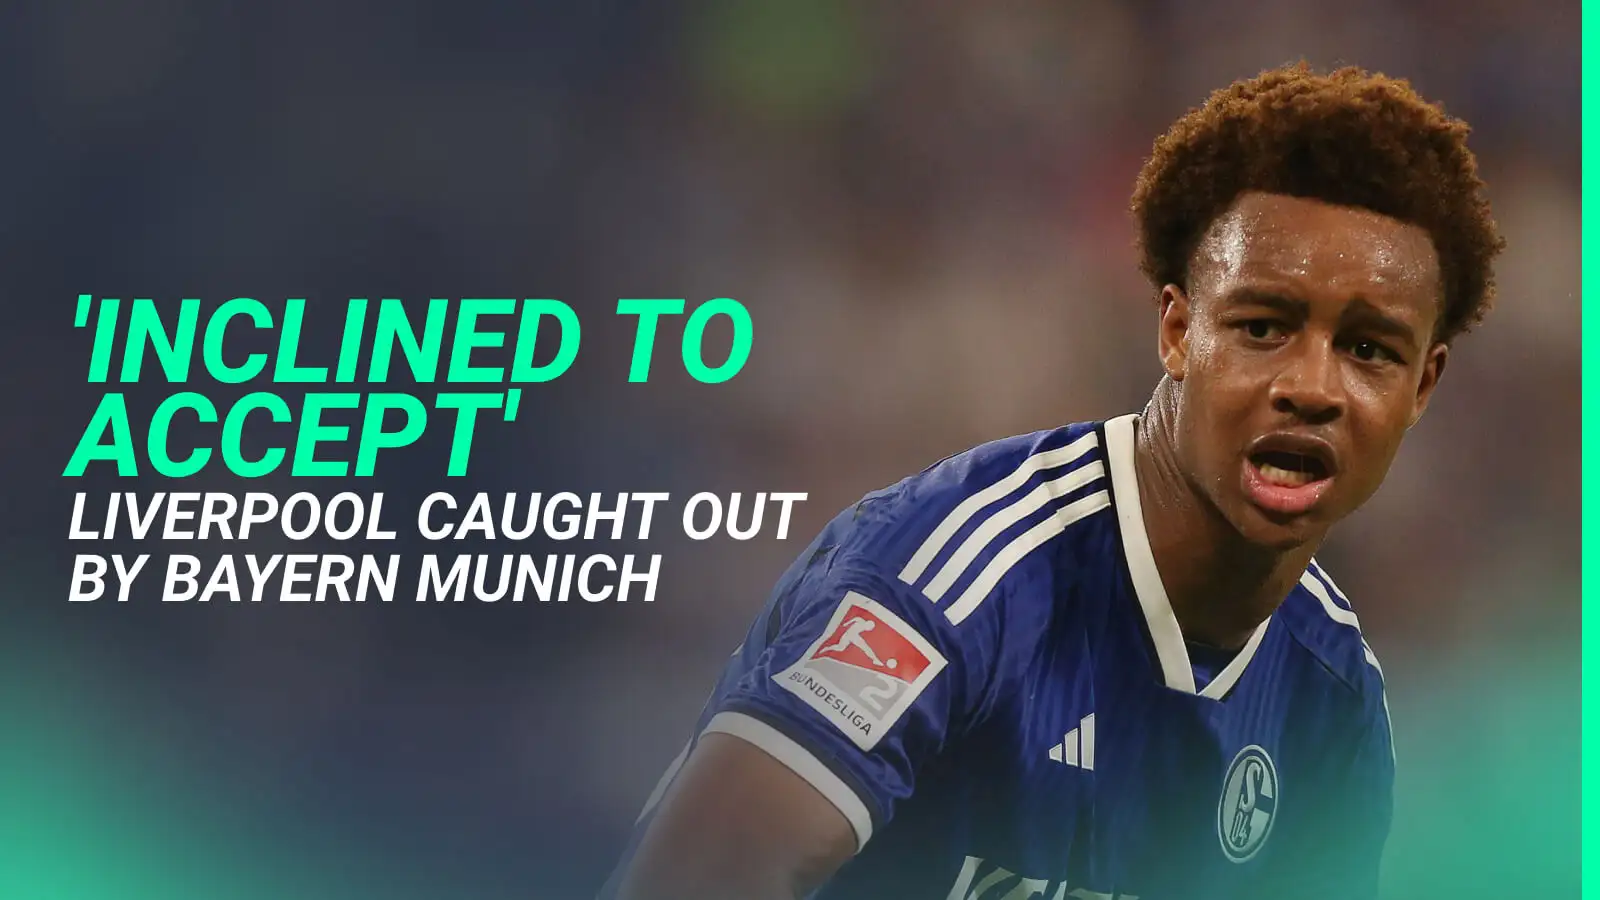 Schalke starlet Assan Ouedraogo